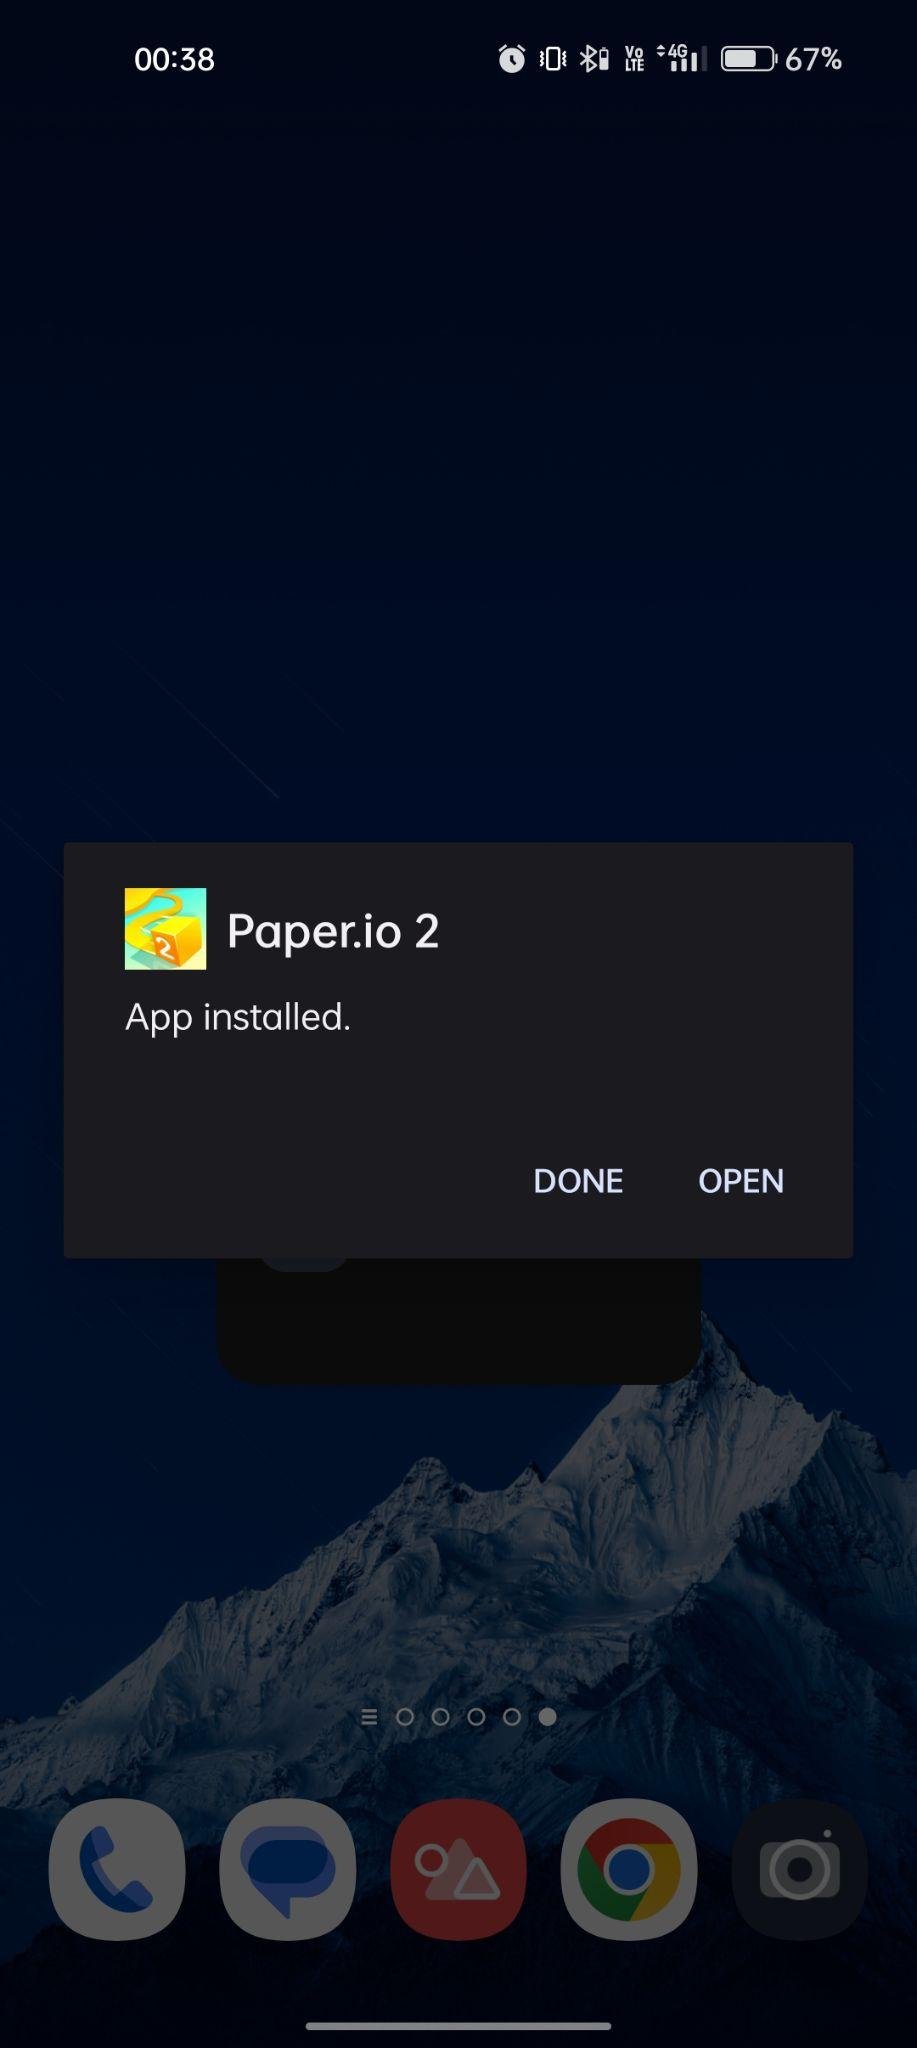 Paper.io 2 apk installed